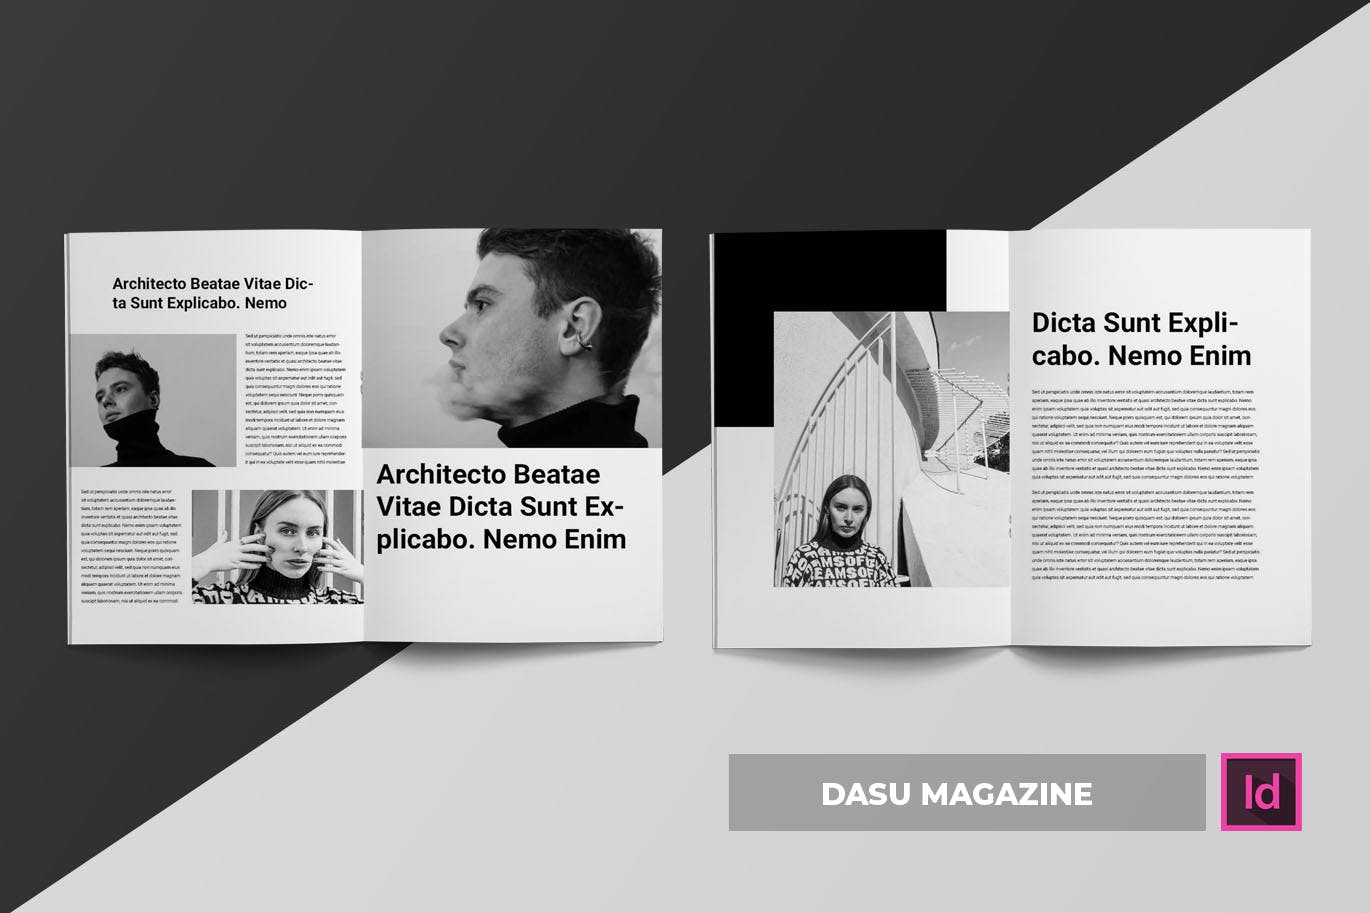 摄影艺术/时装设计主题16图库精选杂志排版设计模板 Dasu | Magazine Template插图(2)